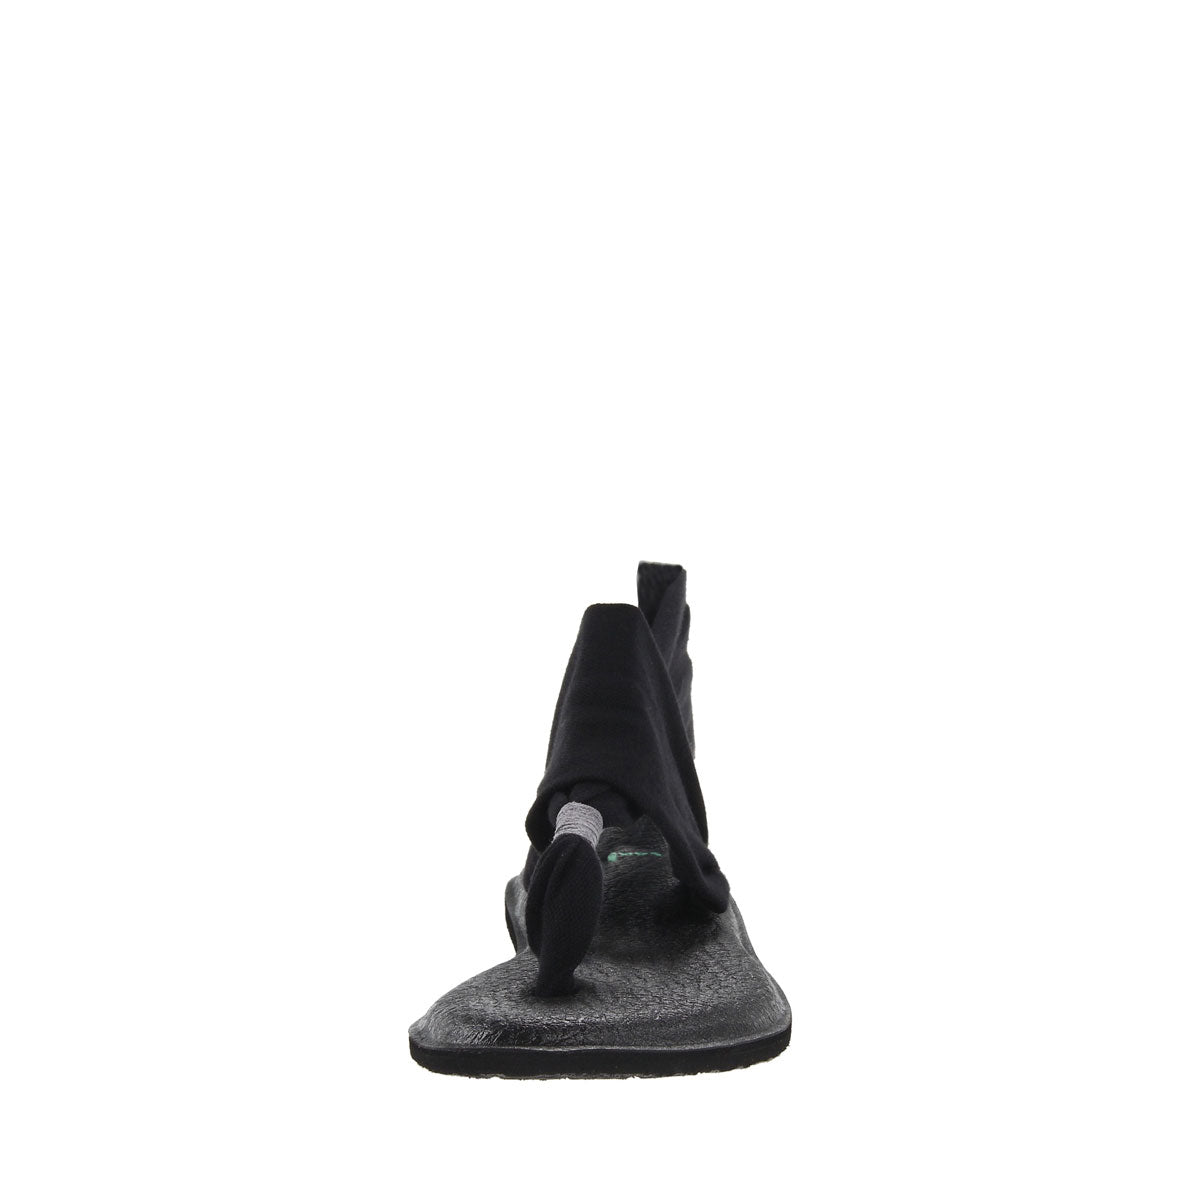 Sanuk Yoga Sling 2 Metallic LX – Milano Shoes